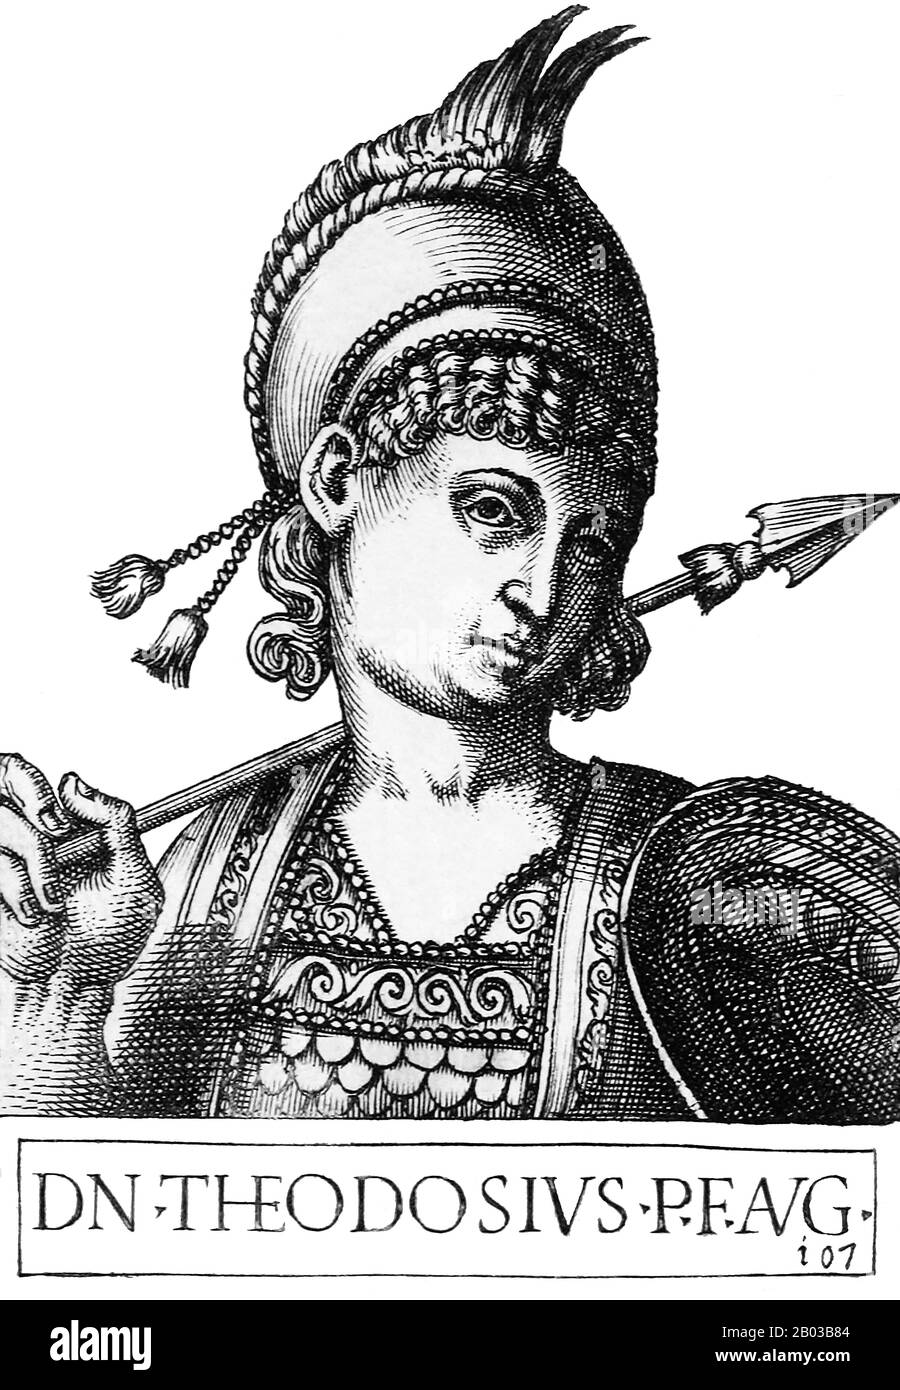 Theodosius III. (-c 754), auch Theodosios III. Genannt, war ein Finanzbeamter und Steuereinlagener im Kaisertum, wobei einige ihn für den Sohn des ehemaligen Kaiser Tiberios III. Beanspruchten Als die Oppsikionstruppen gegen Kaiser Anastasius II. Rebellierten, erklärten sie Theodosius zum Kaiser, eine Wahl, die er nicht ohne weiteres akzeptierte. Einer Geschichte zufolge versuchte er sogar, sich in den Wäldern in der Nähe von Adramyttium zu verstecken, bevor er 715 zum Kaiser gefunden und gefeiert wurde. Stockfoto